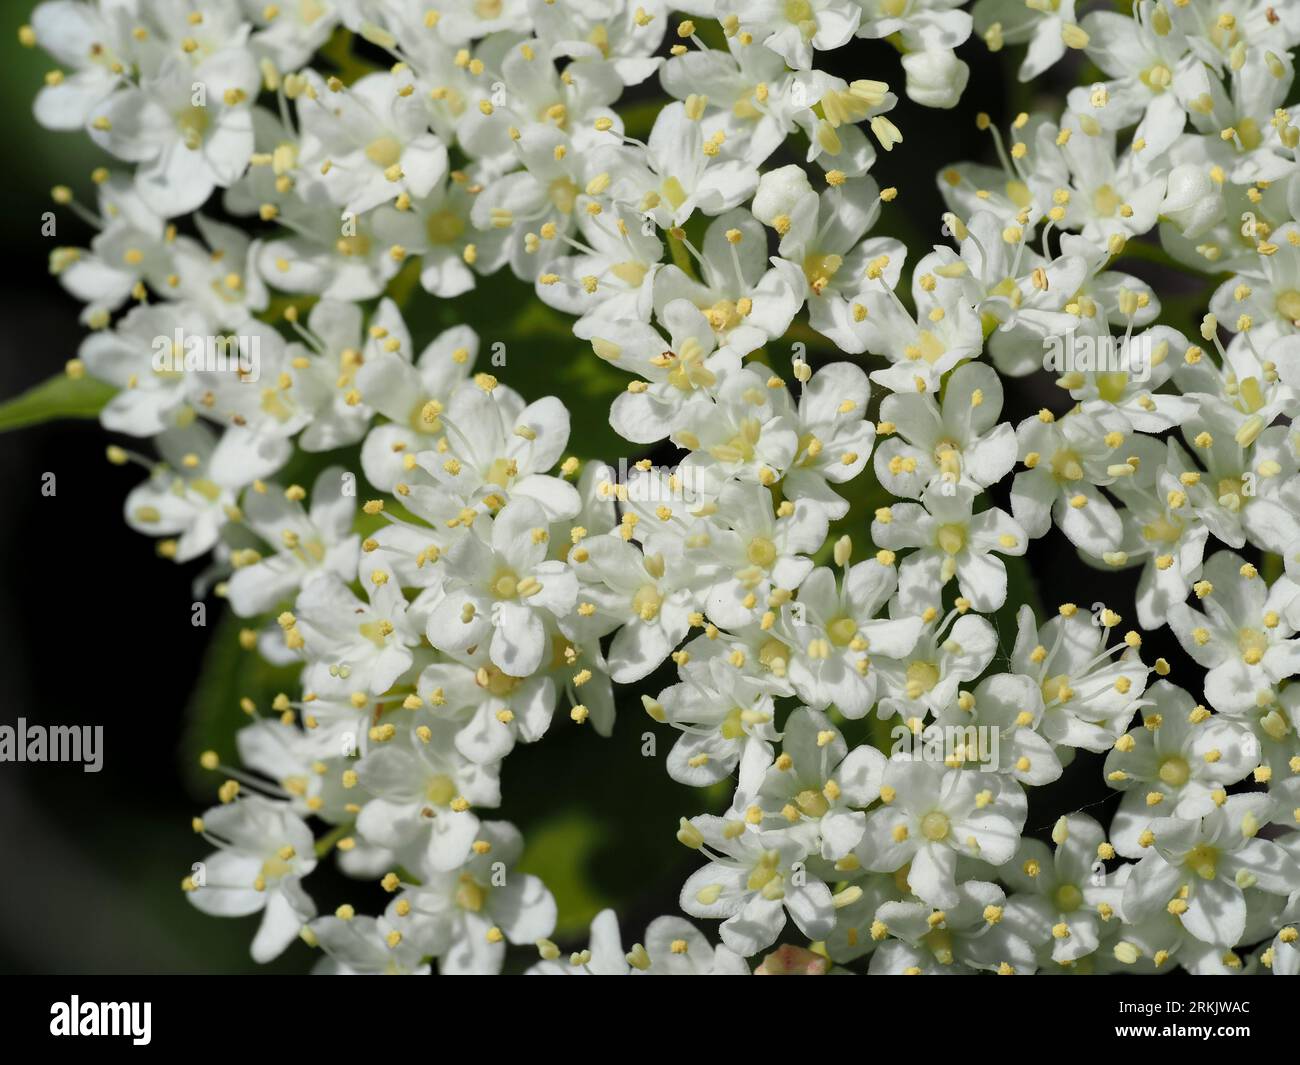 Viburnum lentago (closeup detail). Scientific name: Viburnum lentago. Family: Adoxaceae. Order: Dipsacales. Kingdom: Plantae. Stock Photo